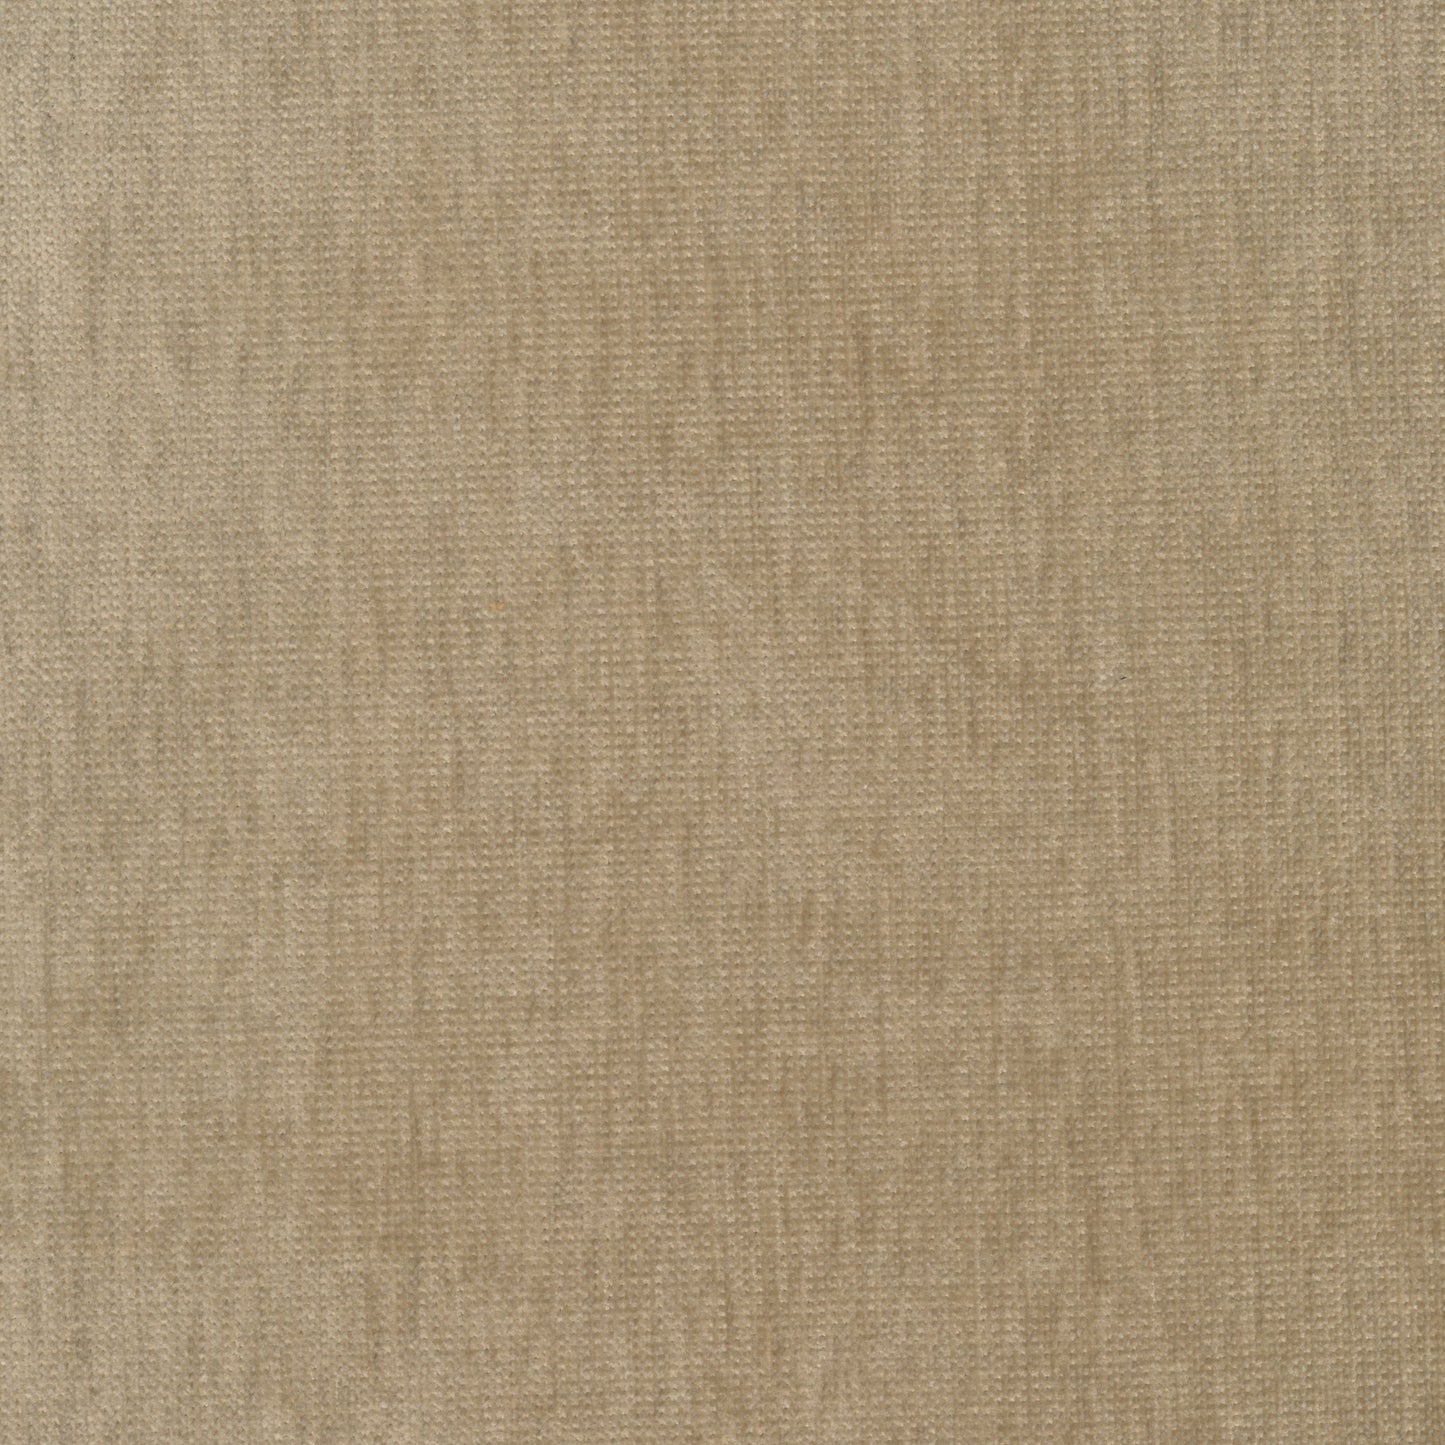 7639-91 Fabric